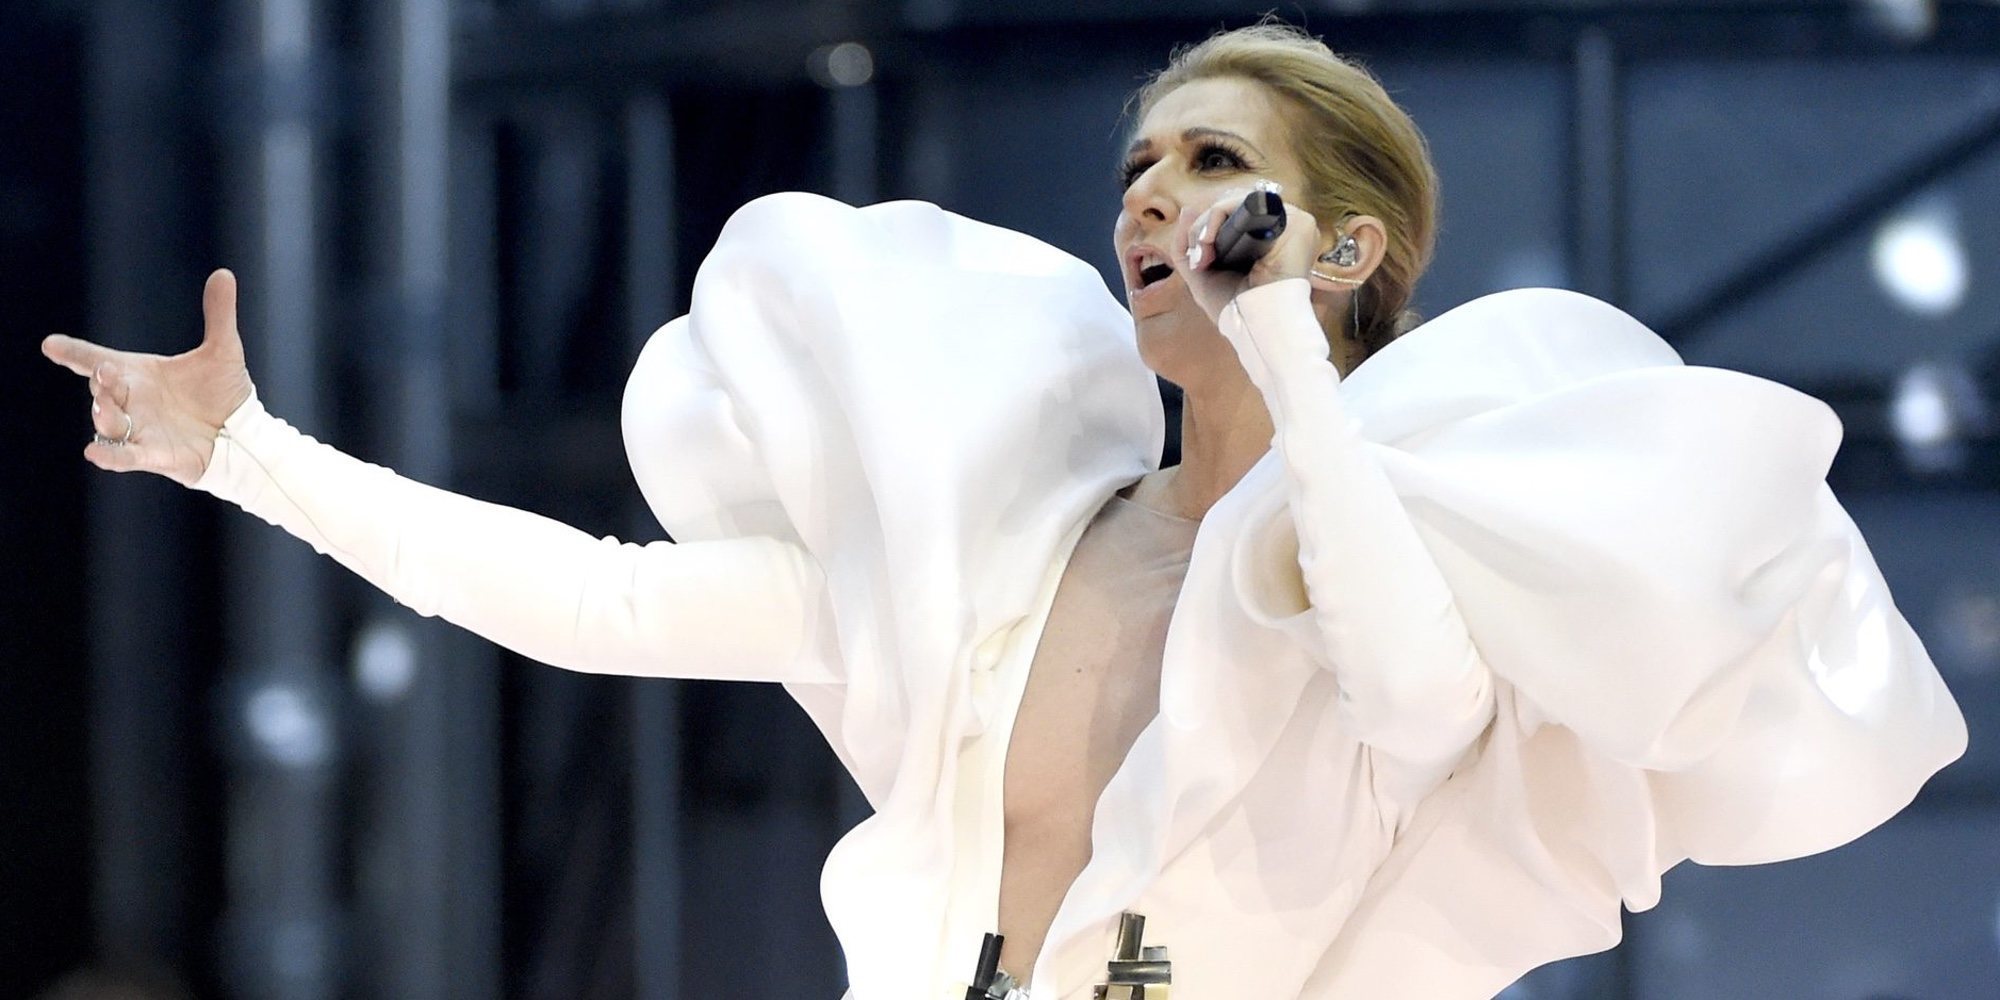 Céline Dion cancela sus próximos conciertos para someterse a una operación